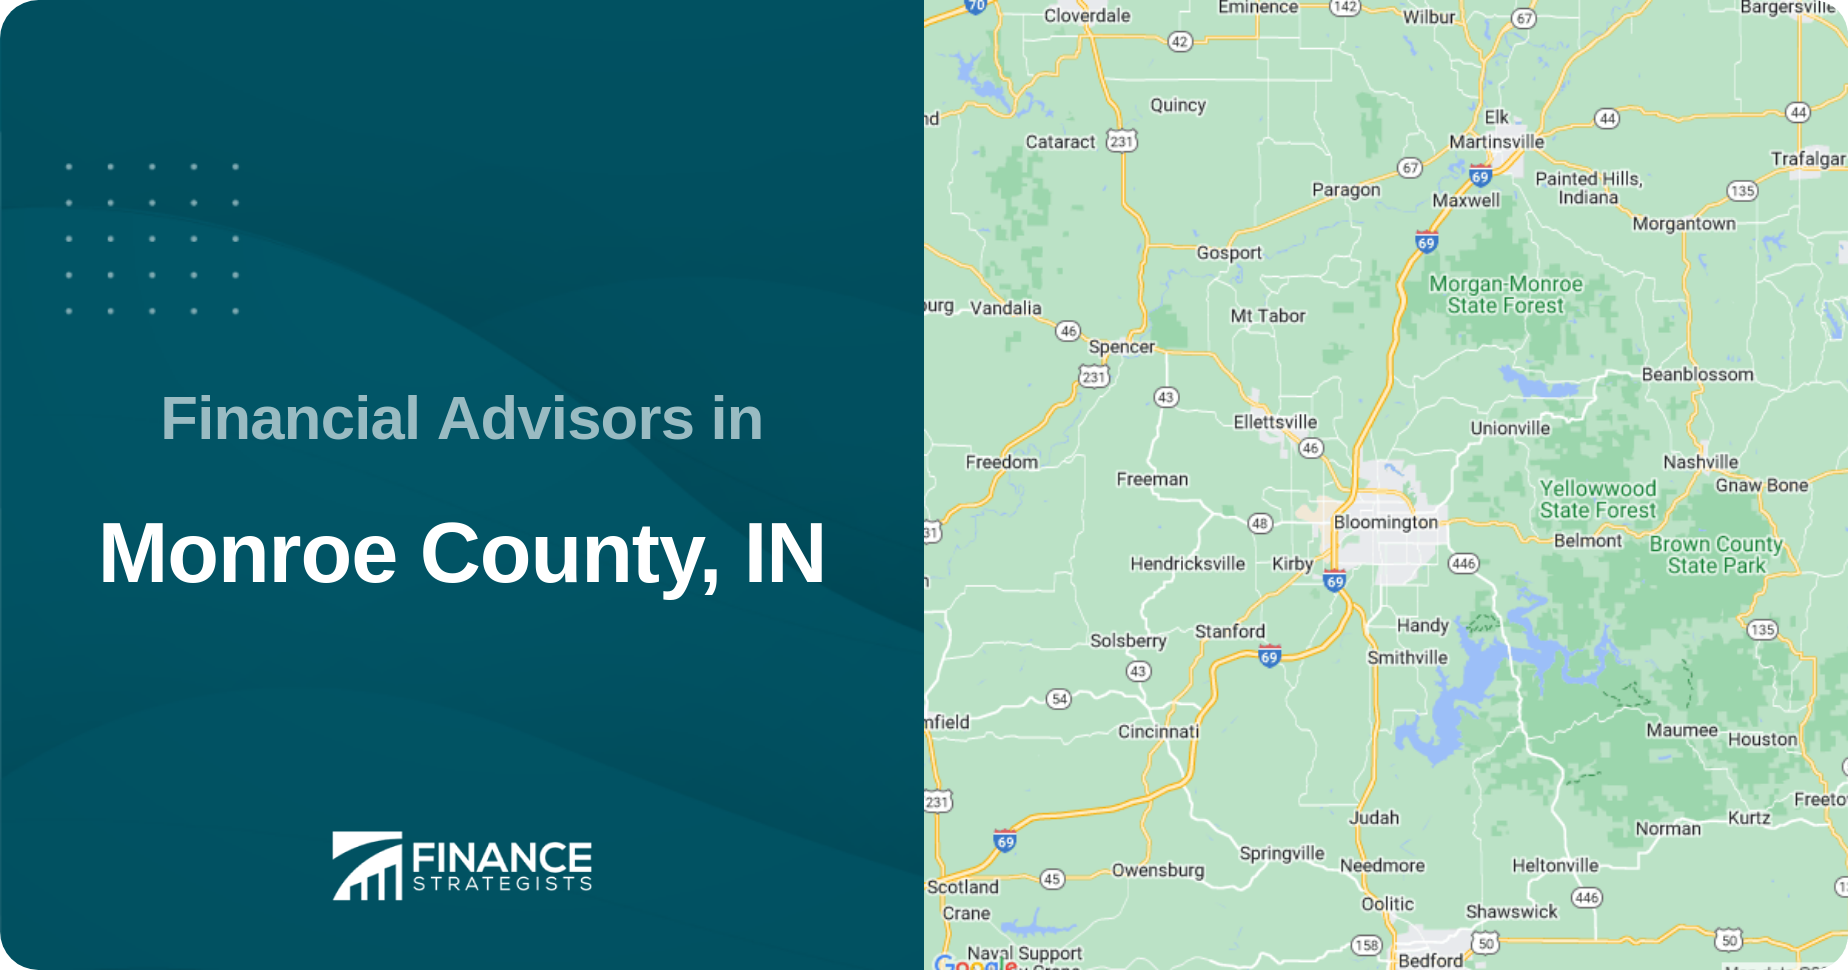 Financial Advisors in Monroe County, IN